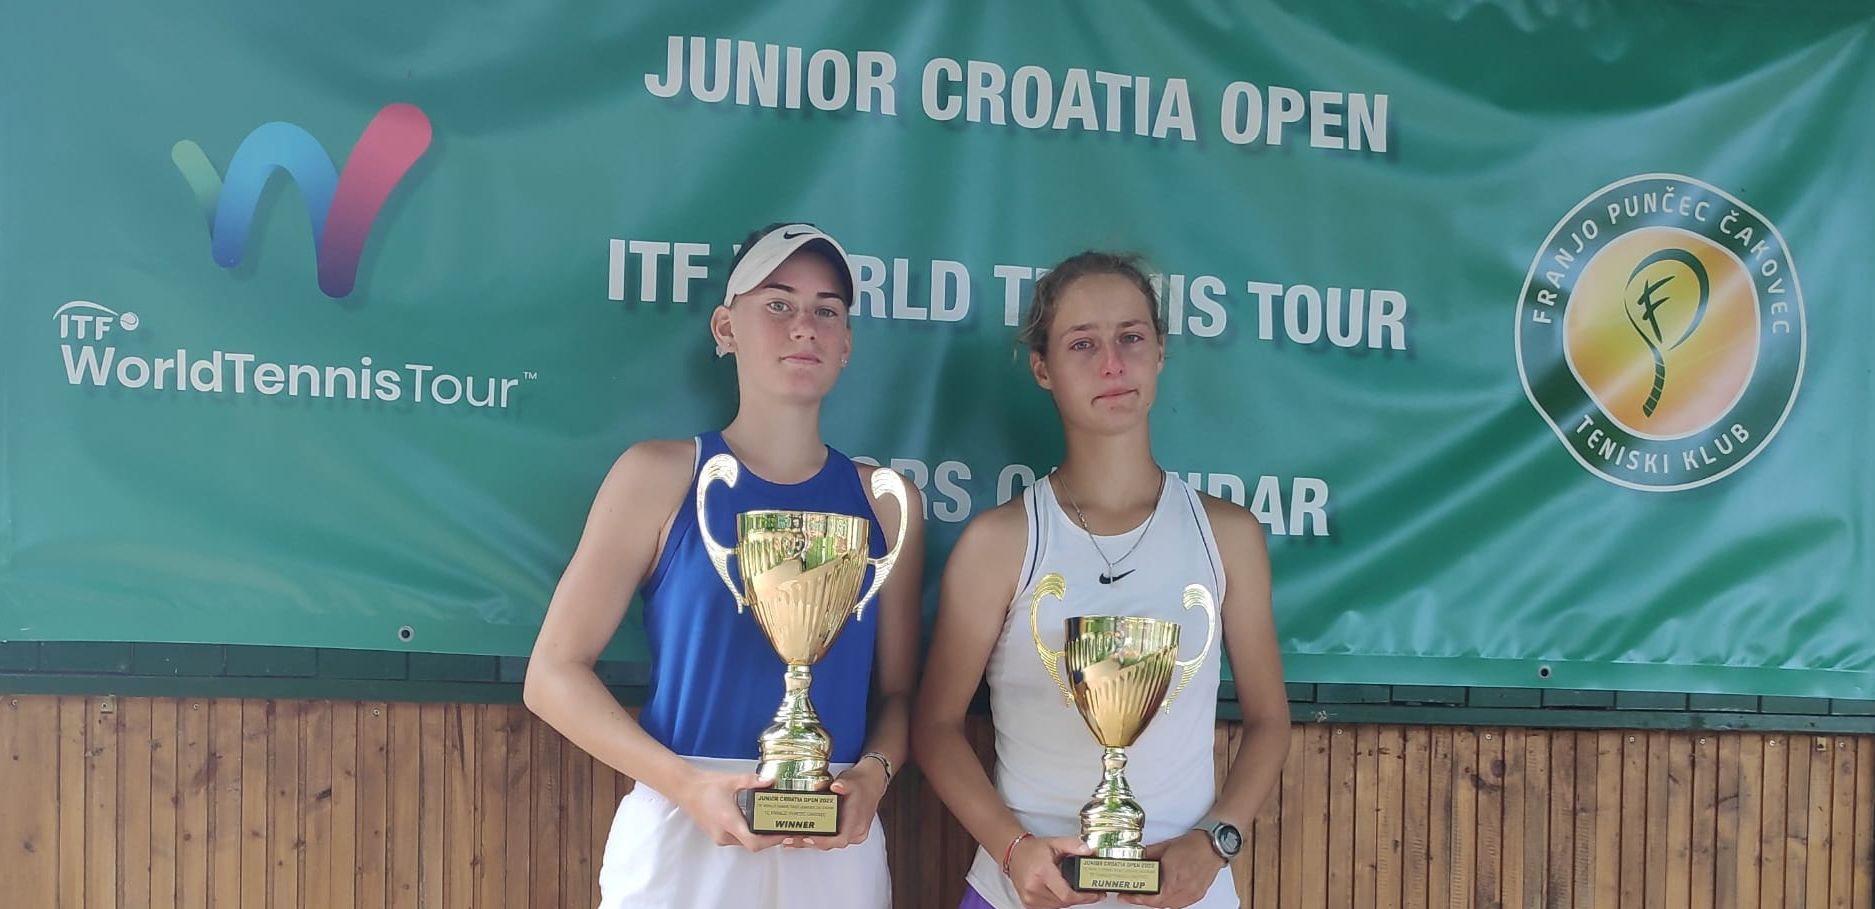 Chiara Jerolimov pobjednica Croatia Opena u Čakovcu, u hrvatskom finalu bolja od Rije Derniković